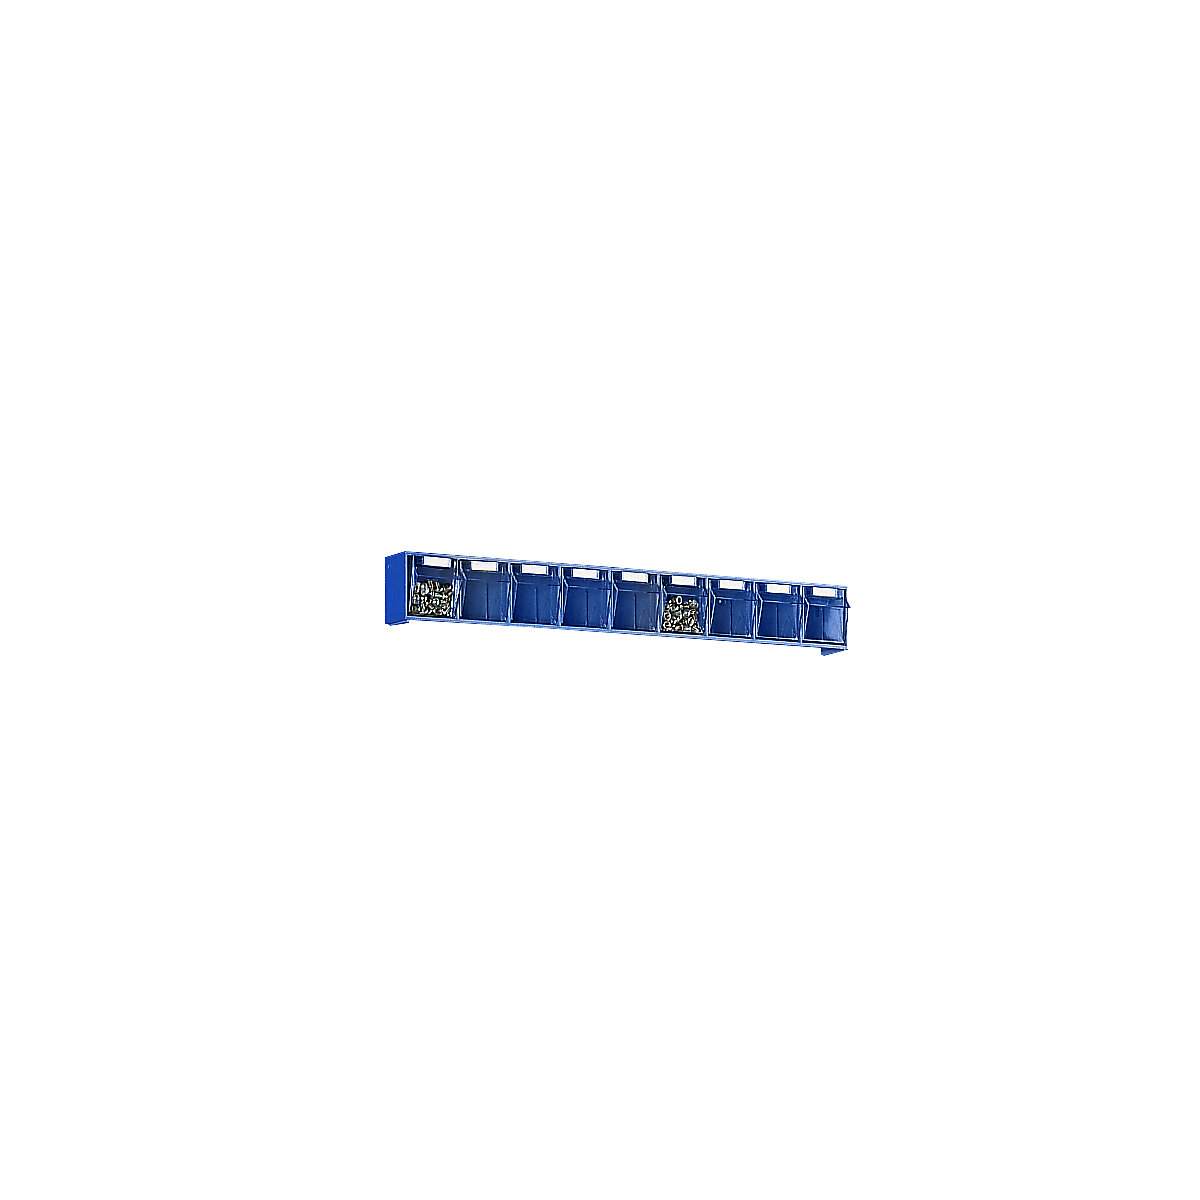 Sistema de caixas articuladas, AxLxP do corpo 77 x 600 x 62 mm, 9 caixas, azul, a partir de 10 unid.-6